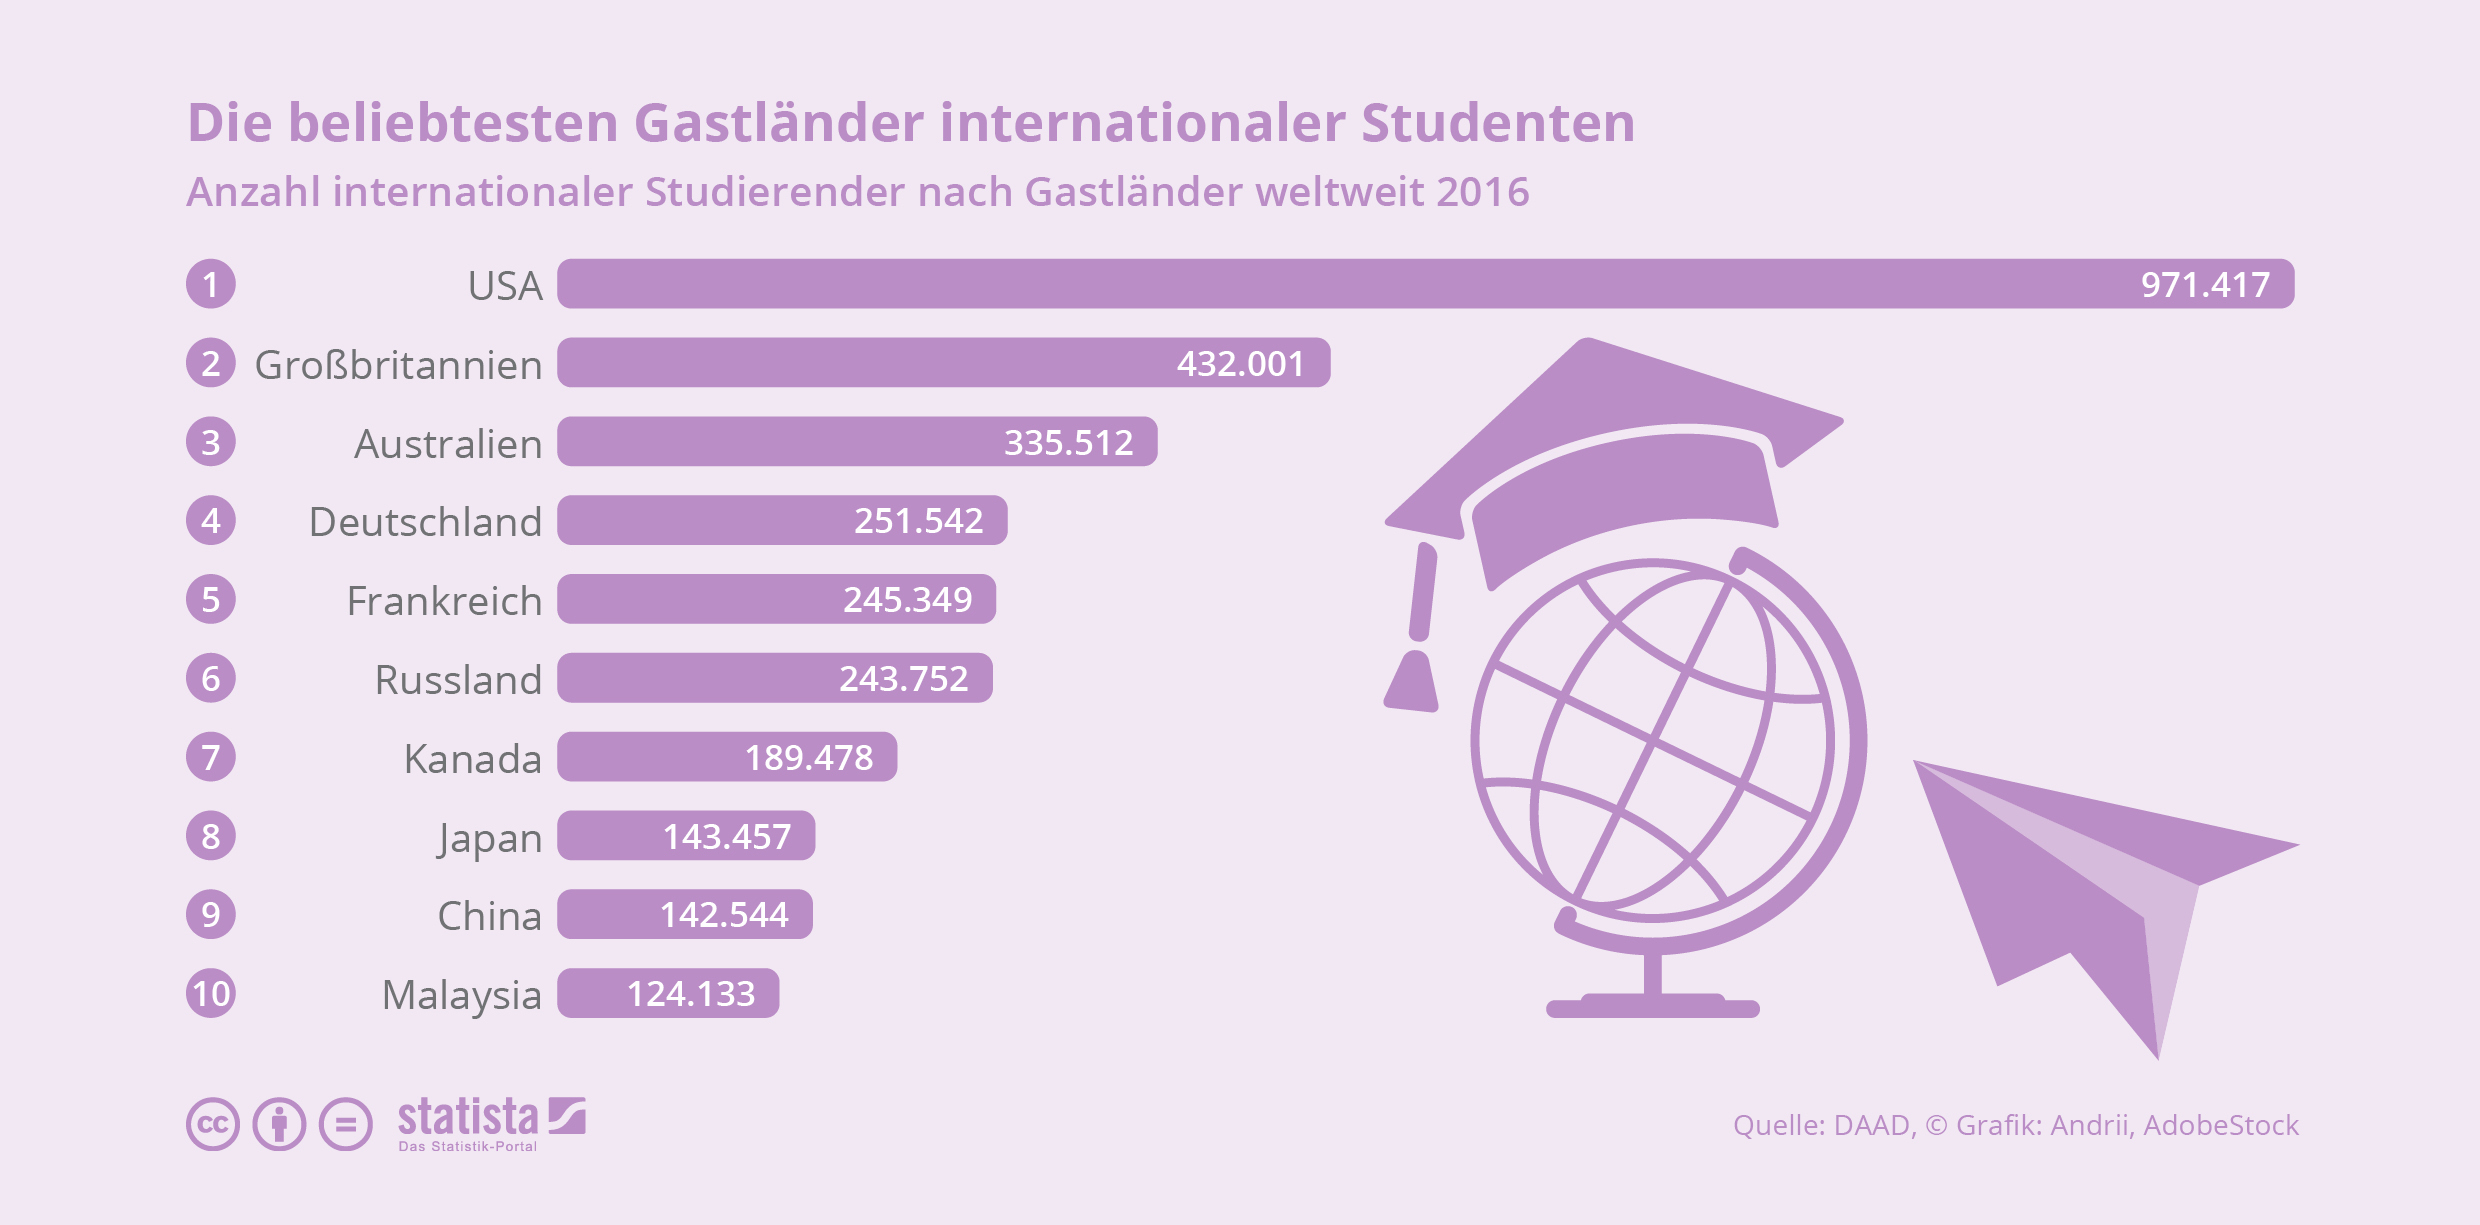 Die beliebtesten Gastländer internationaler Studenten